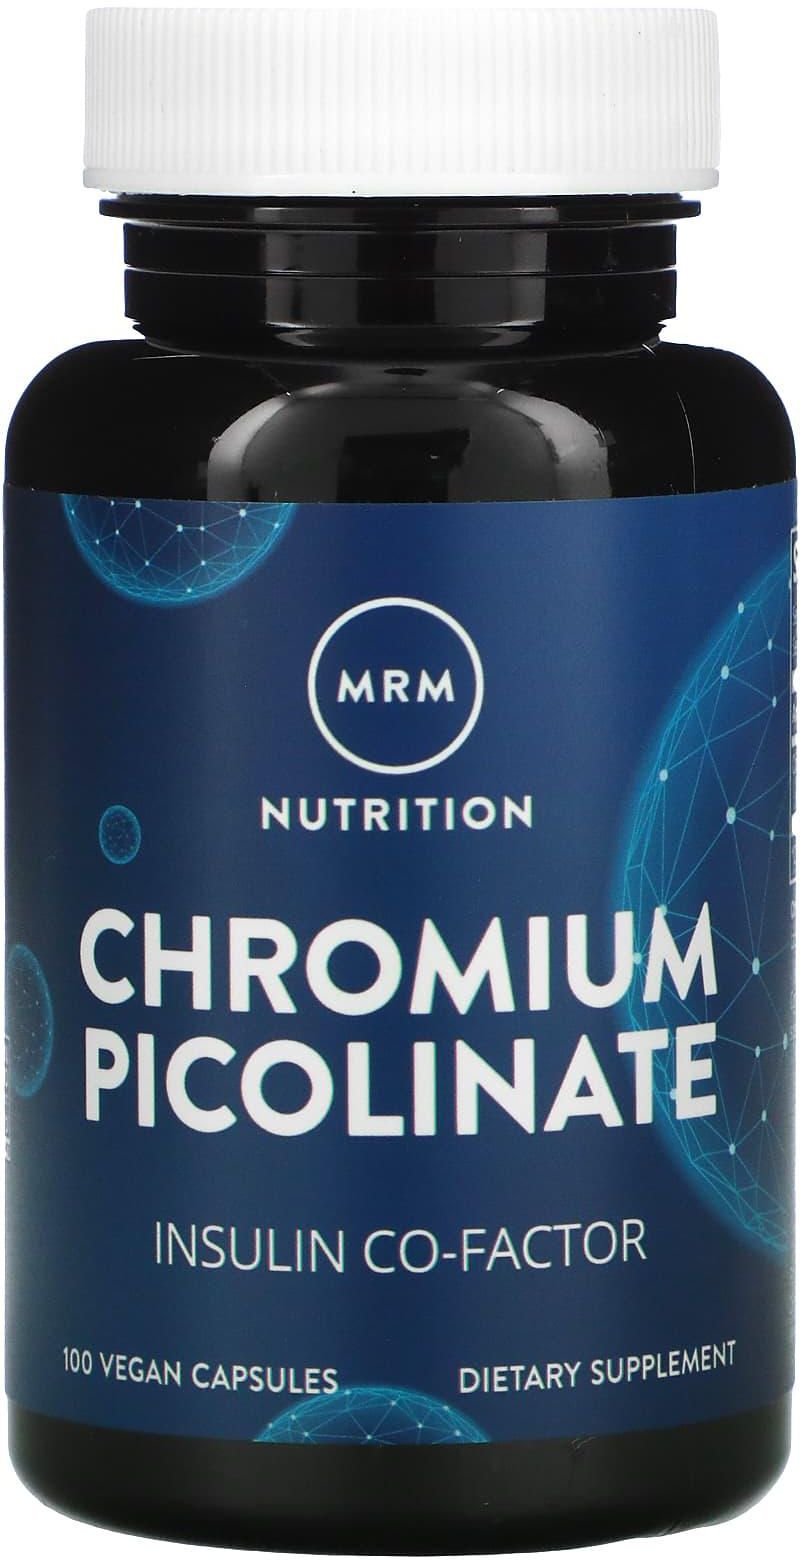 MRM Nutrition‏, بيكولينات الكروم الثلاثي للتغذية، 200 ميكرو جرام، 100 كبسولة نباتية